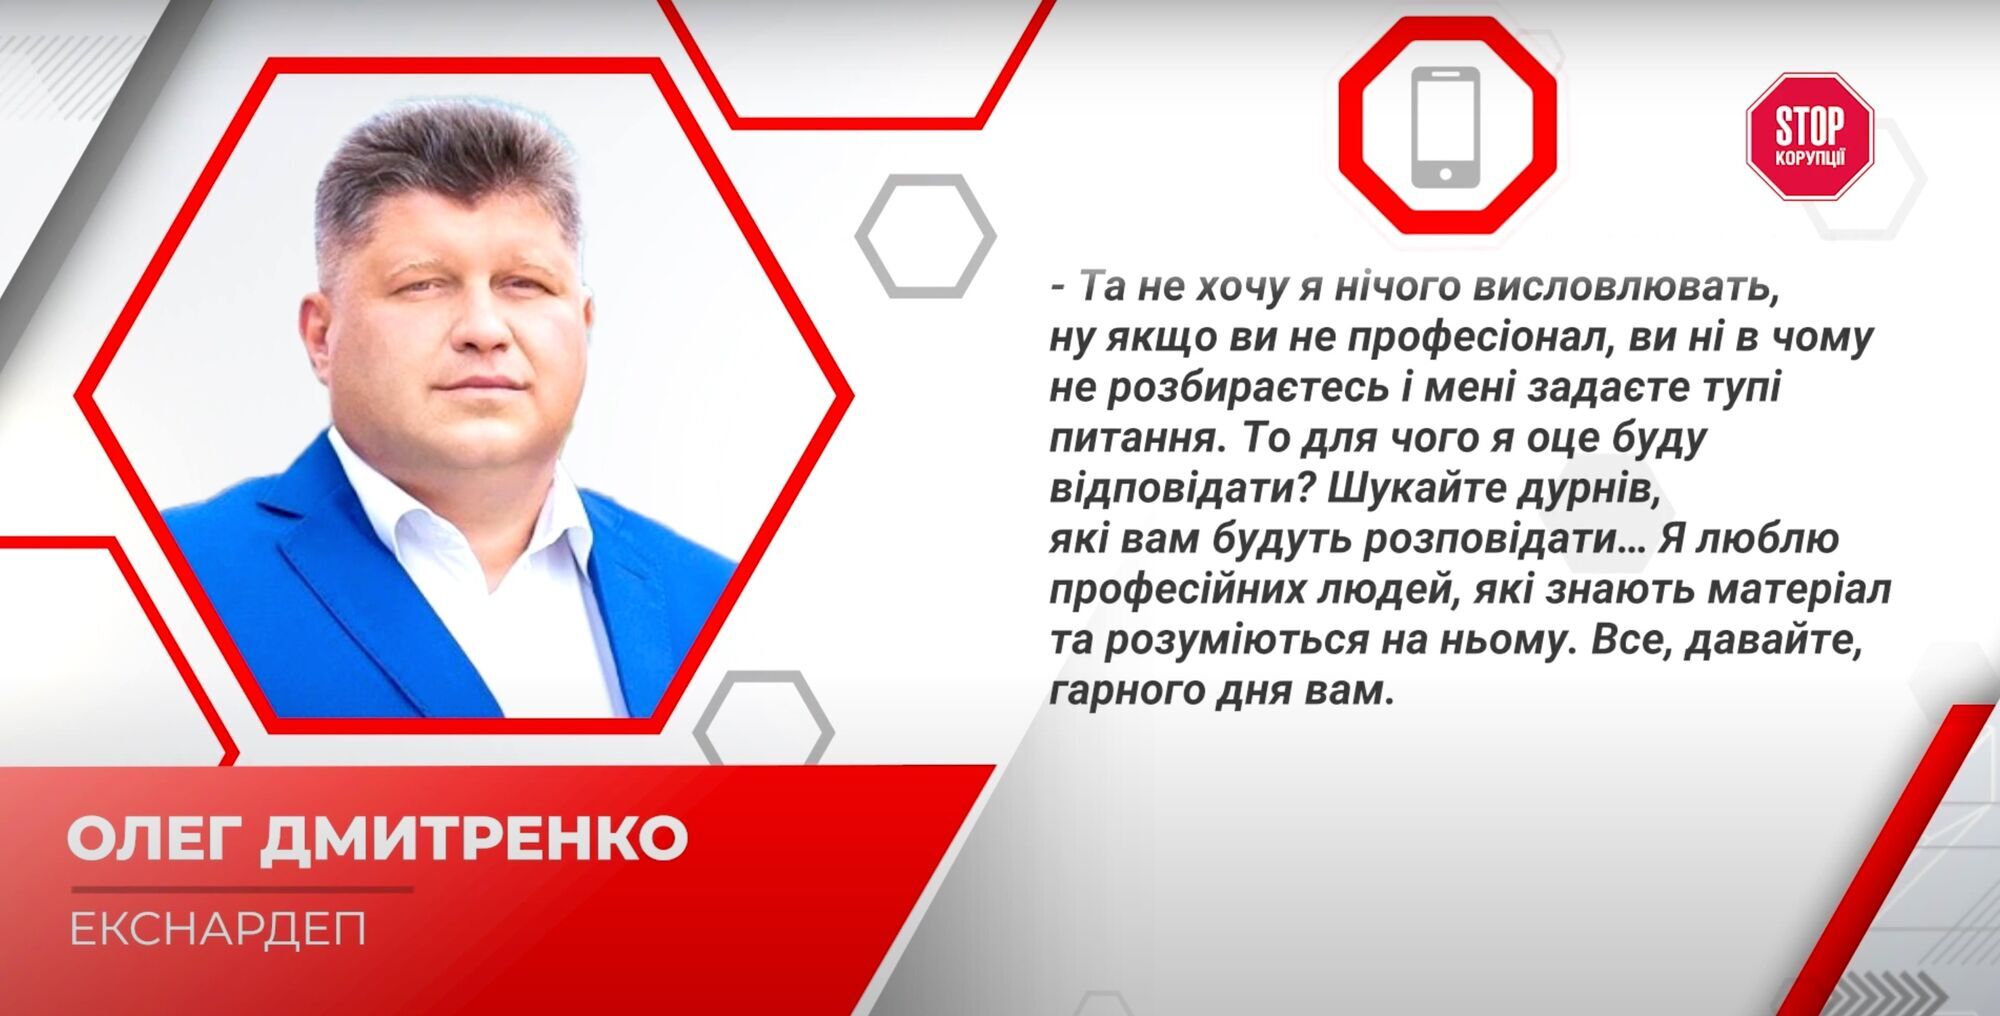 Дмитренко отказался отвечать на вопросы журналистов